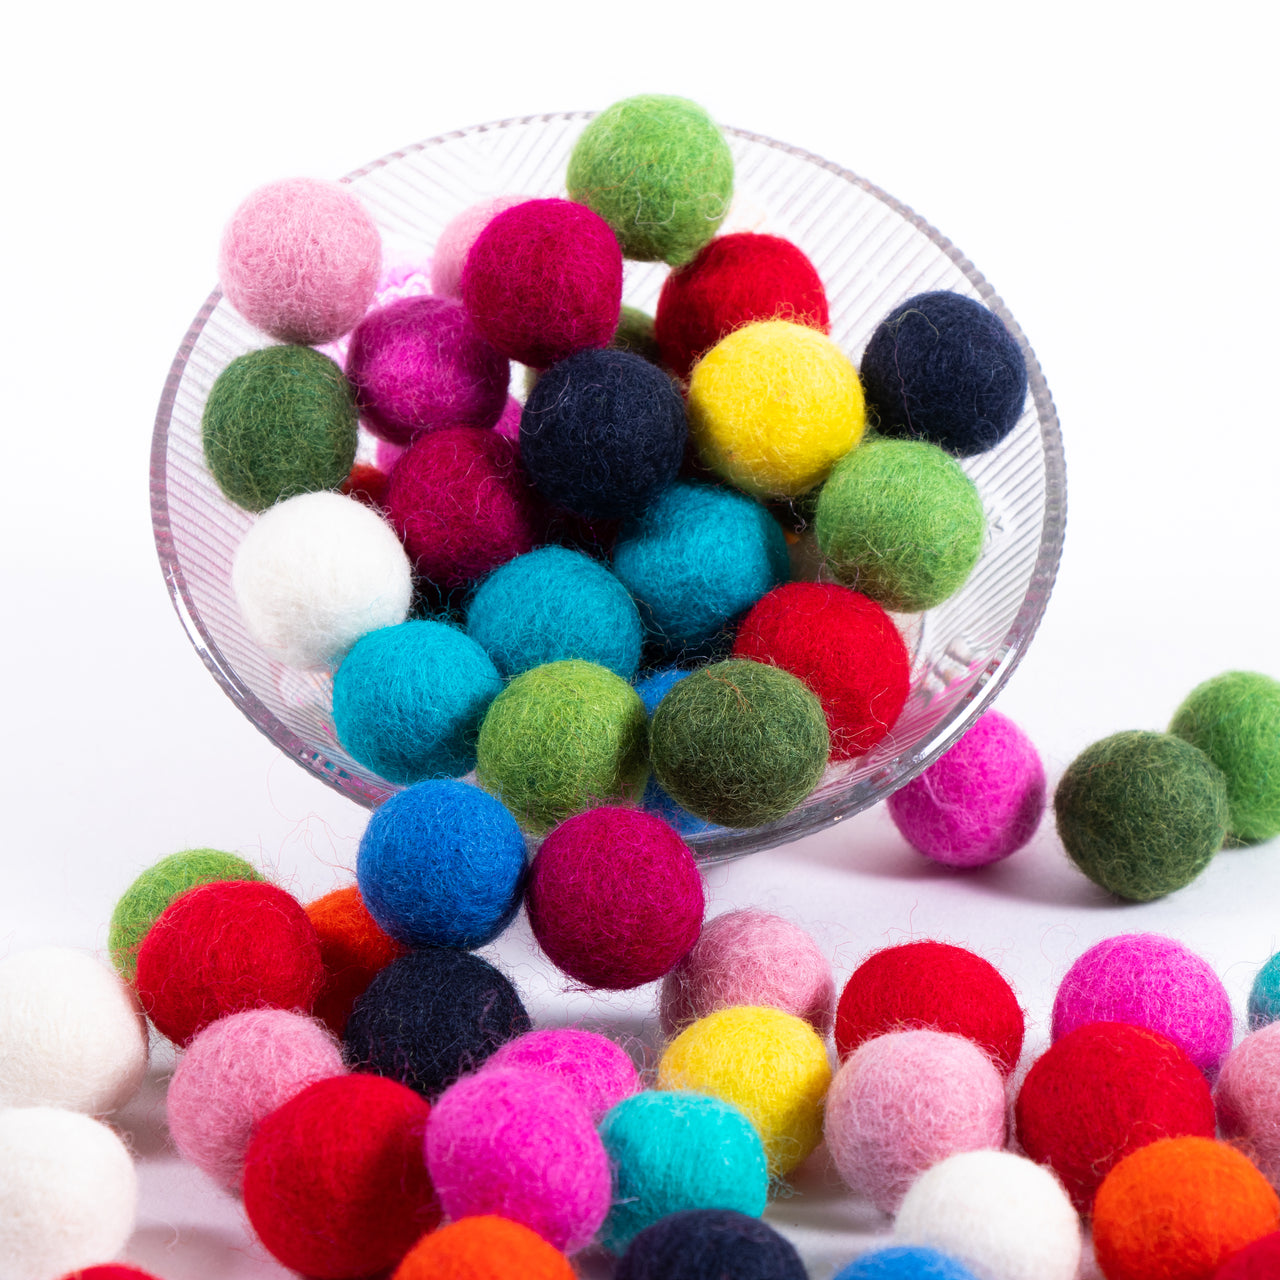 Confetti Felt Balls - 100% Wool Felt Balls - 50 Wool Felt Balls -2cm Felt  Balls - Party Felt Balls - Happy Colors - Party Felt Ball Garland